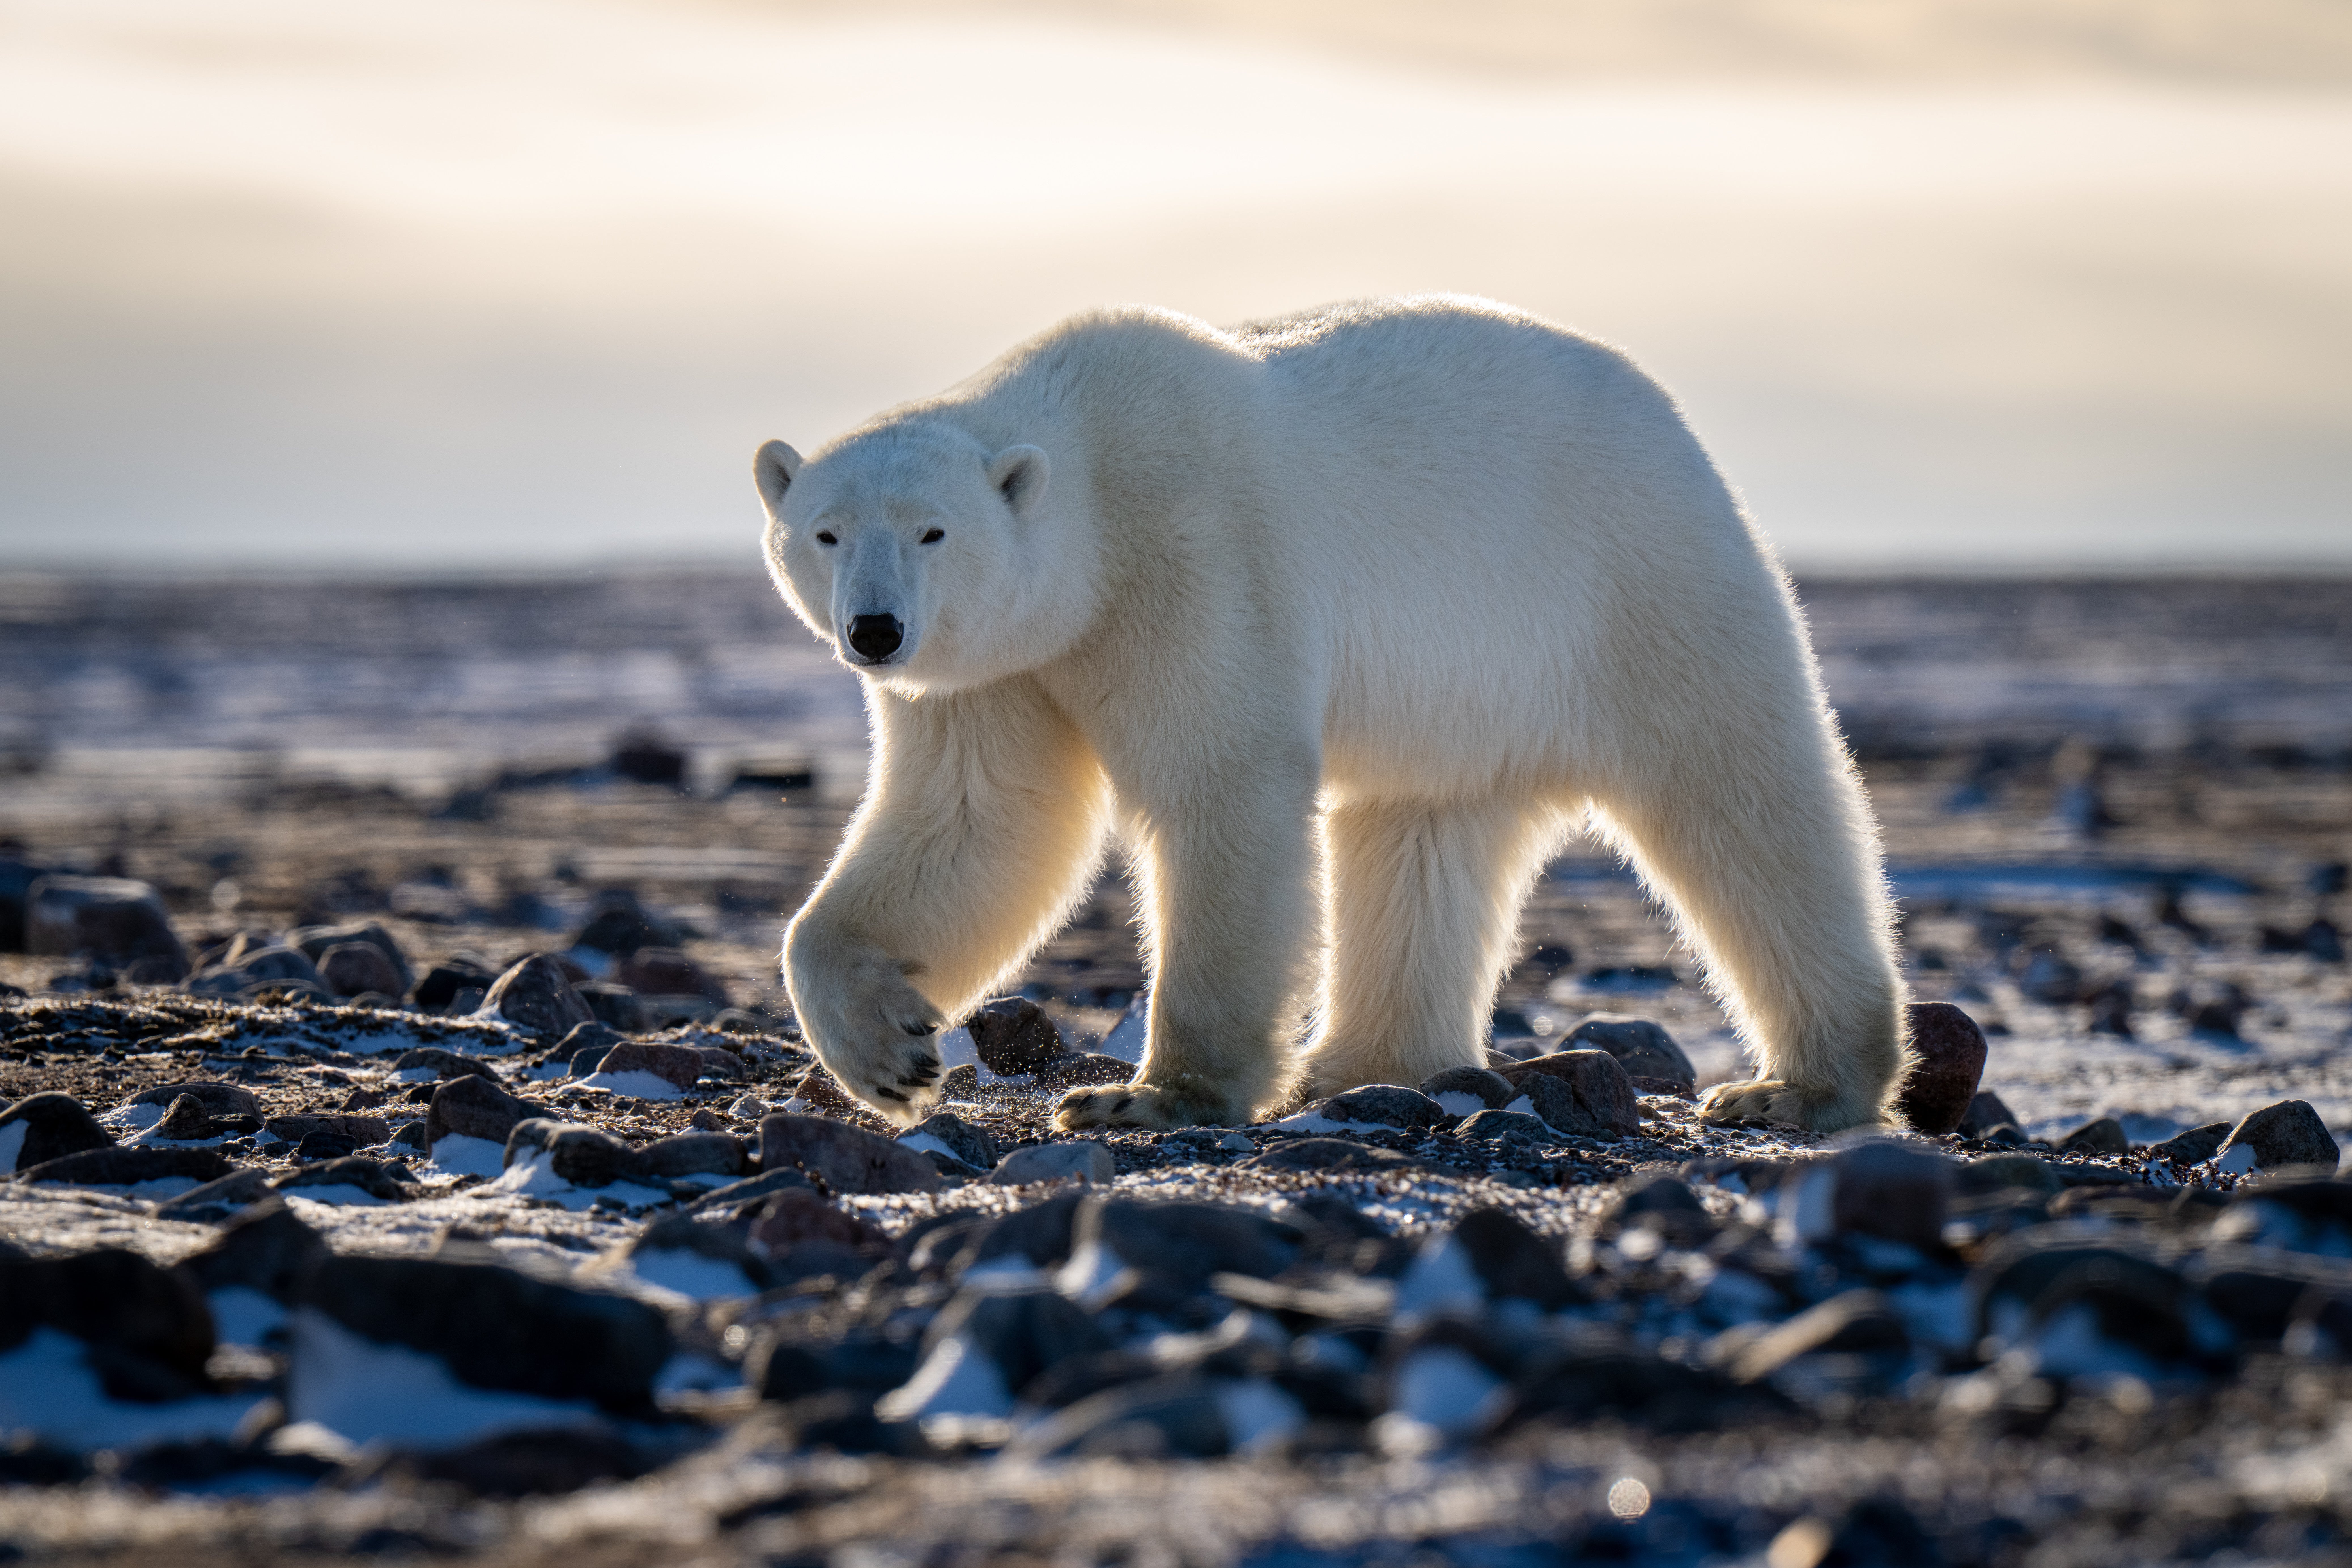 a massive polar bear walks along a cold, stony beach in the arctic.